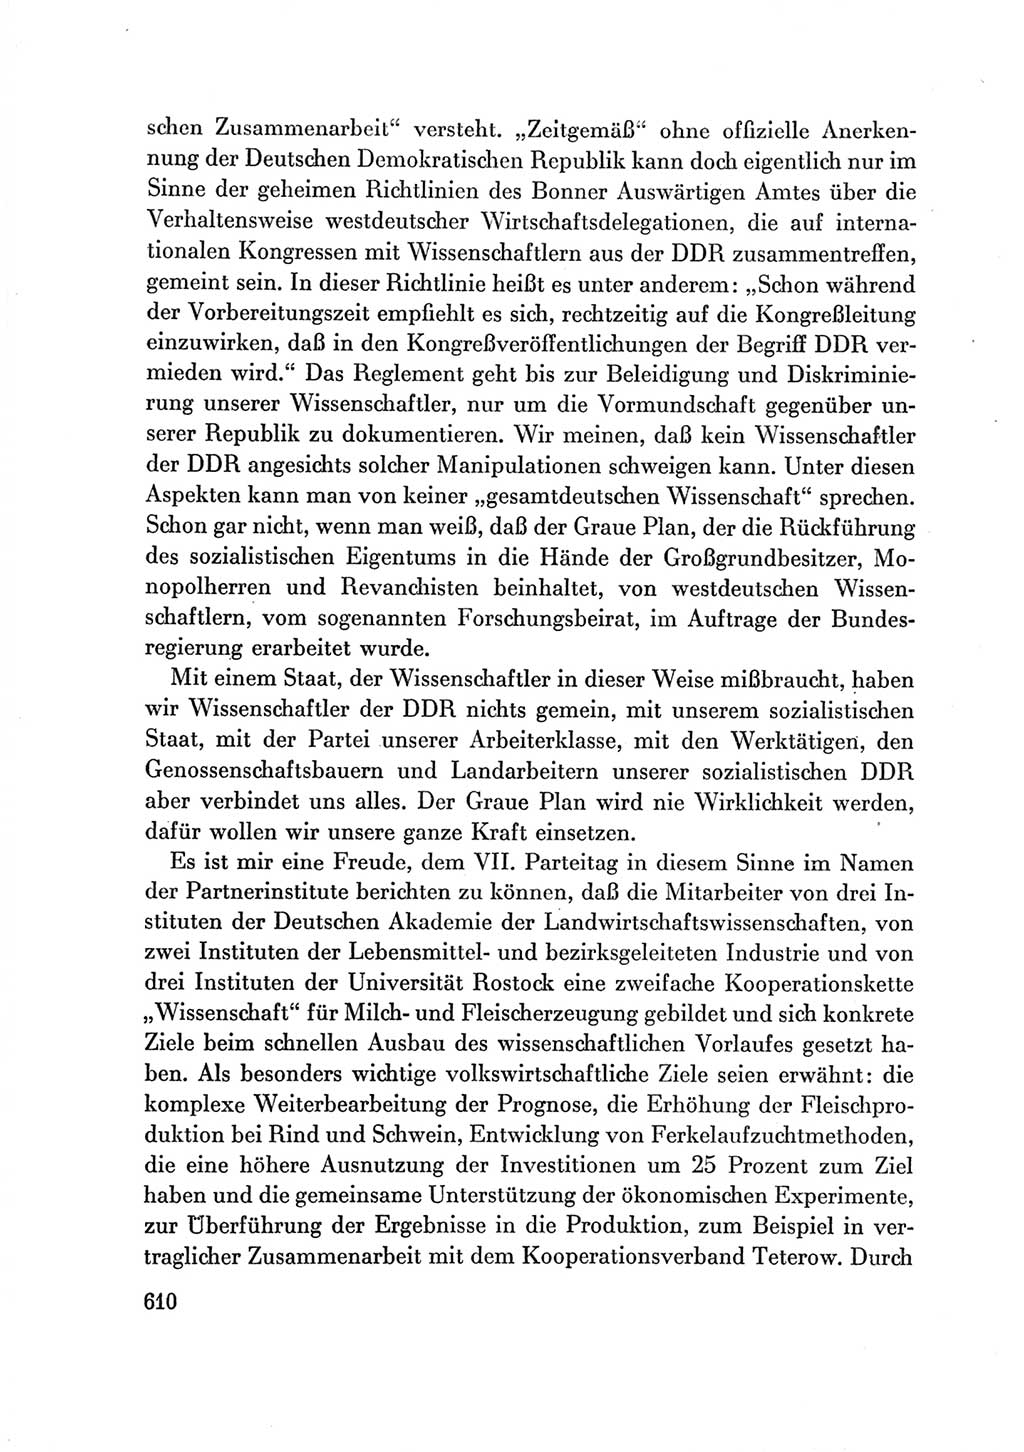 Protokoll der Verhandlungen des Ⅶ. Parteitages der Sozialistischen Einheitspartei Deutschlands (SED) [Deutsche Demokratische Republik (DDR)] 1967, Band Ⅲ, Seite 610 (Prot. Verh. Ⅶ. PT SED DDR 1967, Bd. Ⅲ, S. 610)